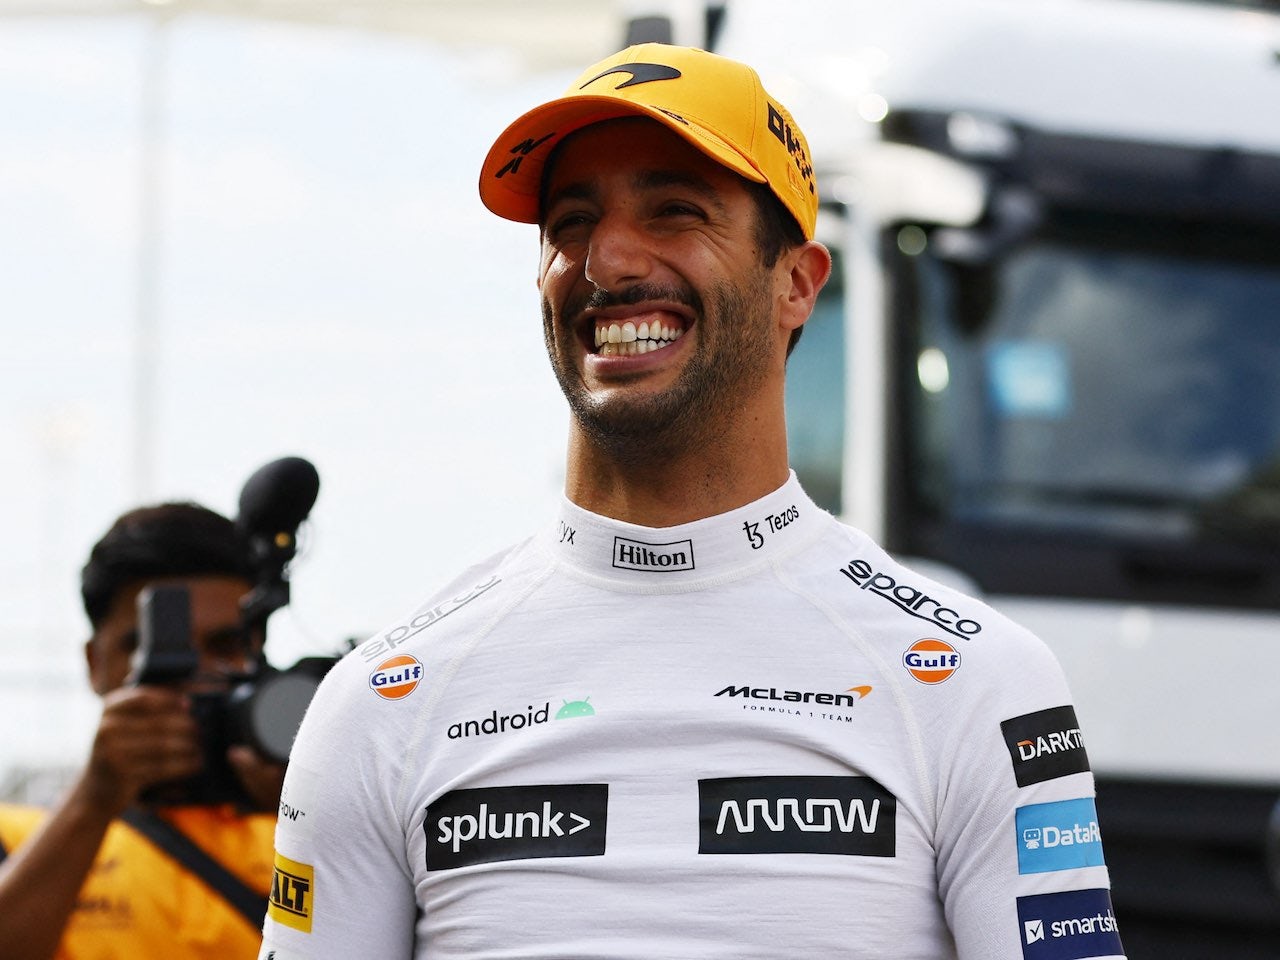 Ricciardo won't attend 24 races in 2022